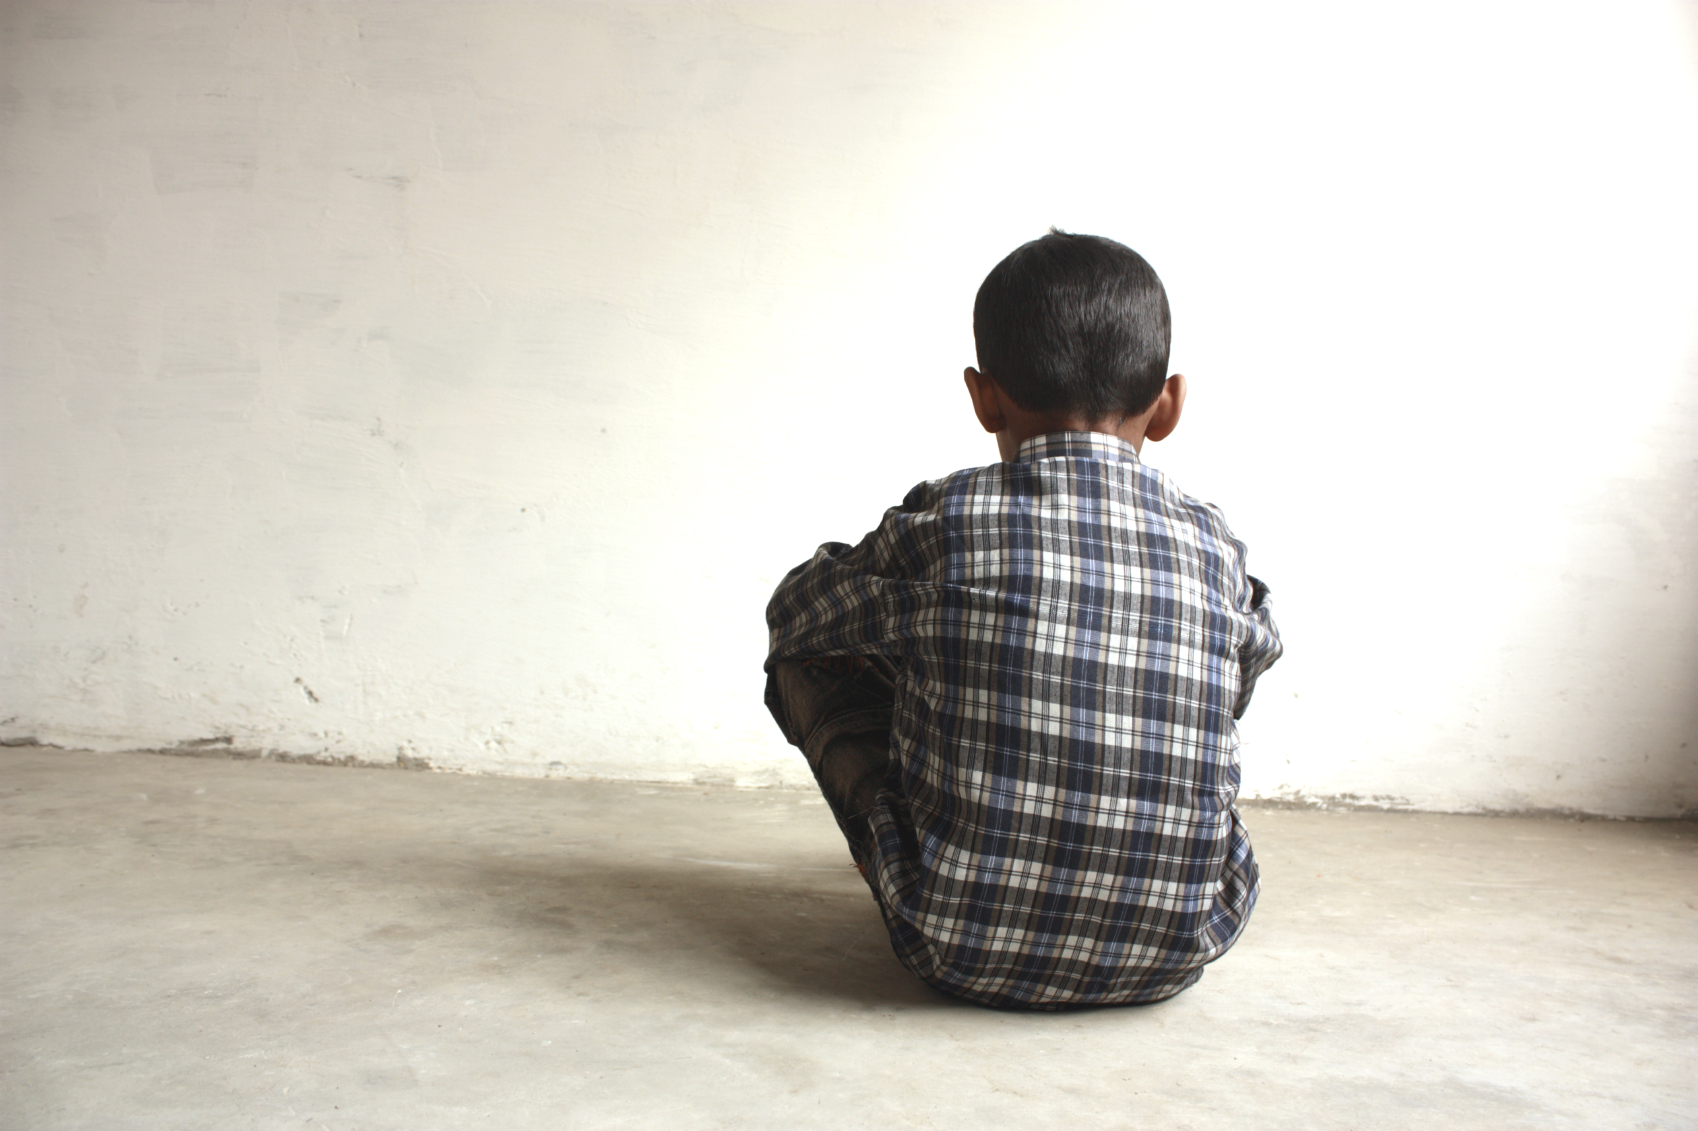  En 25 estados, el abuso infantil es cosa menor; no lo consideran delito grave